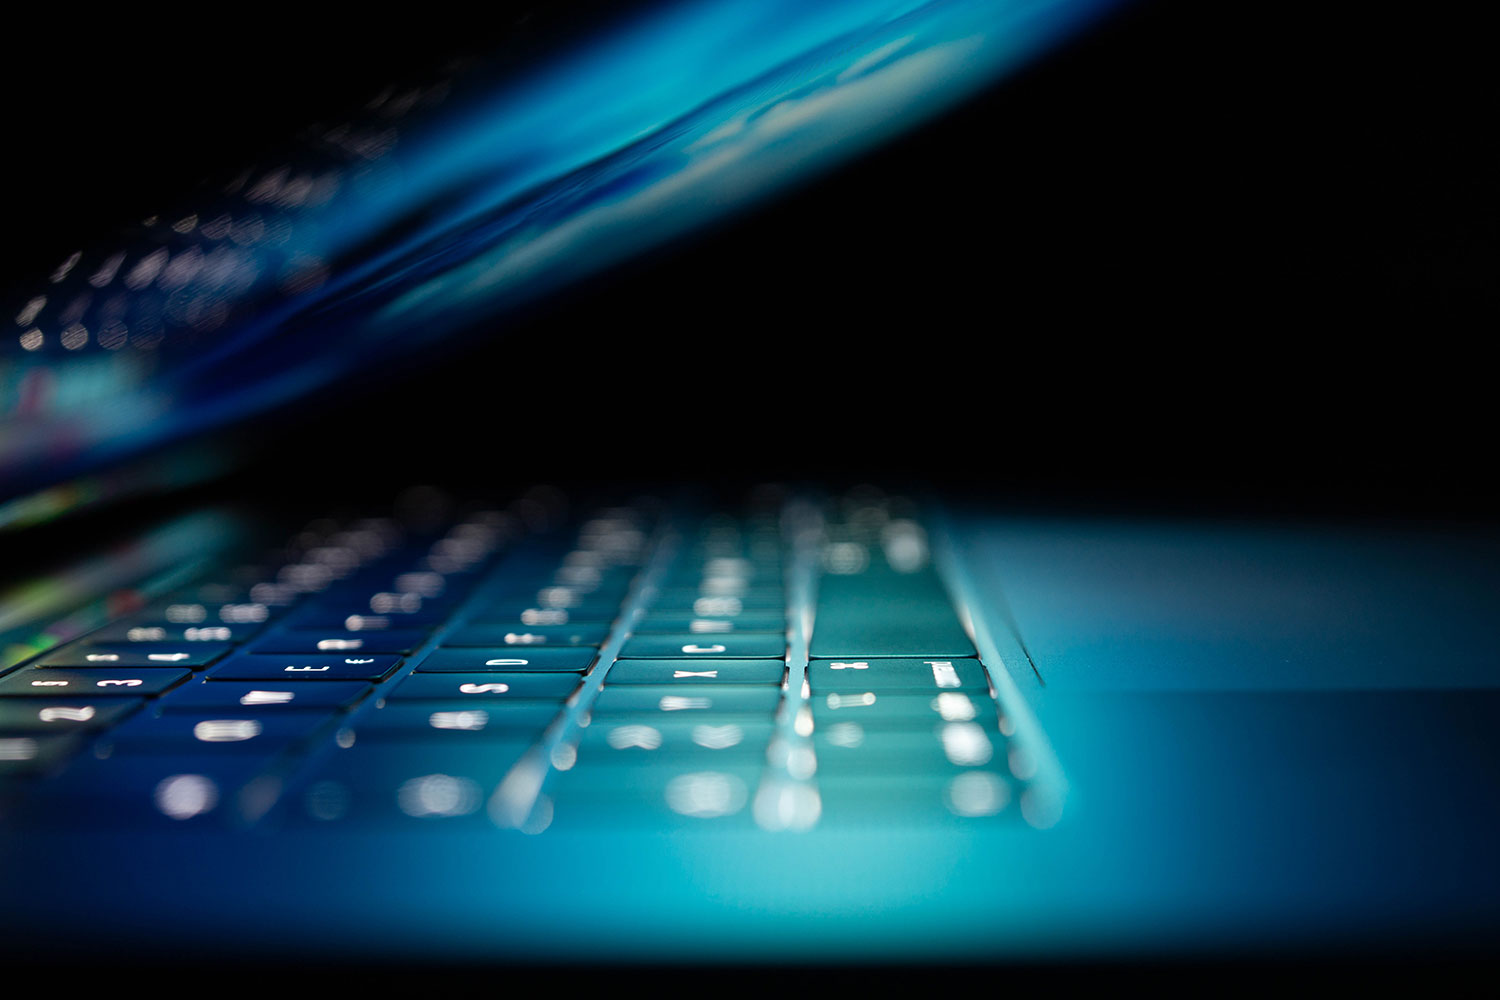 Laptop, keyboard close up, neon light